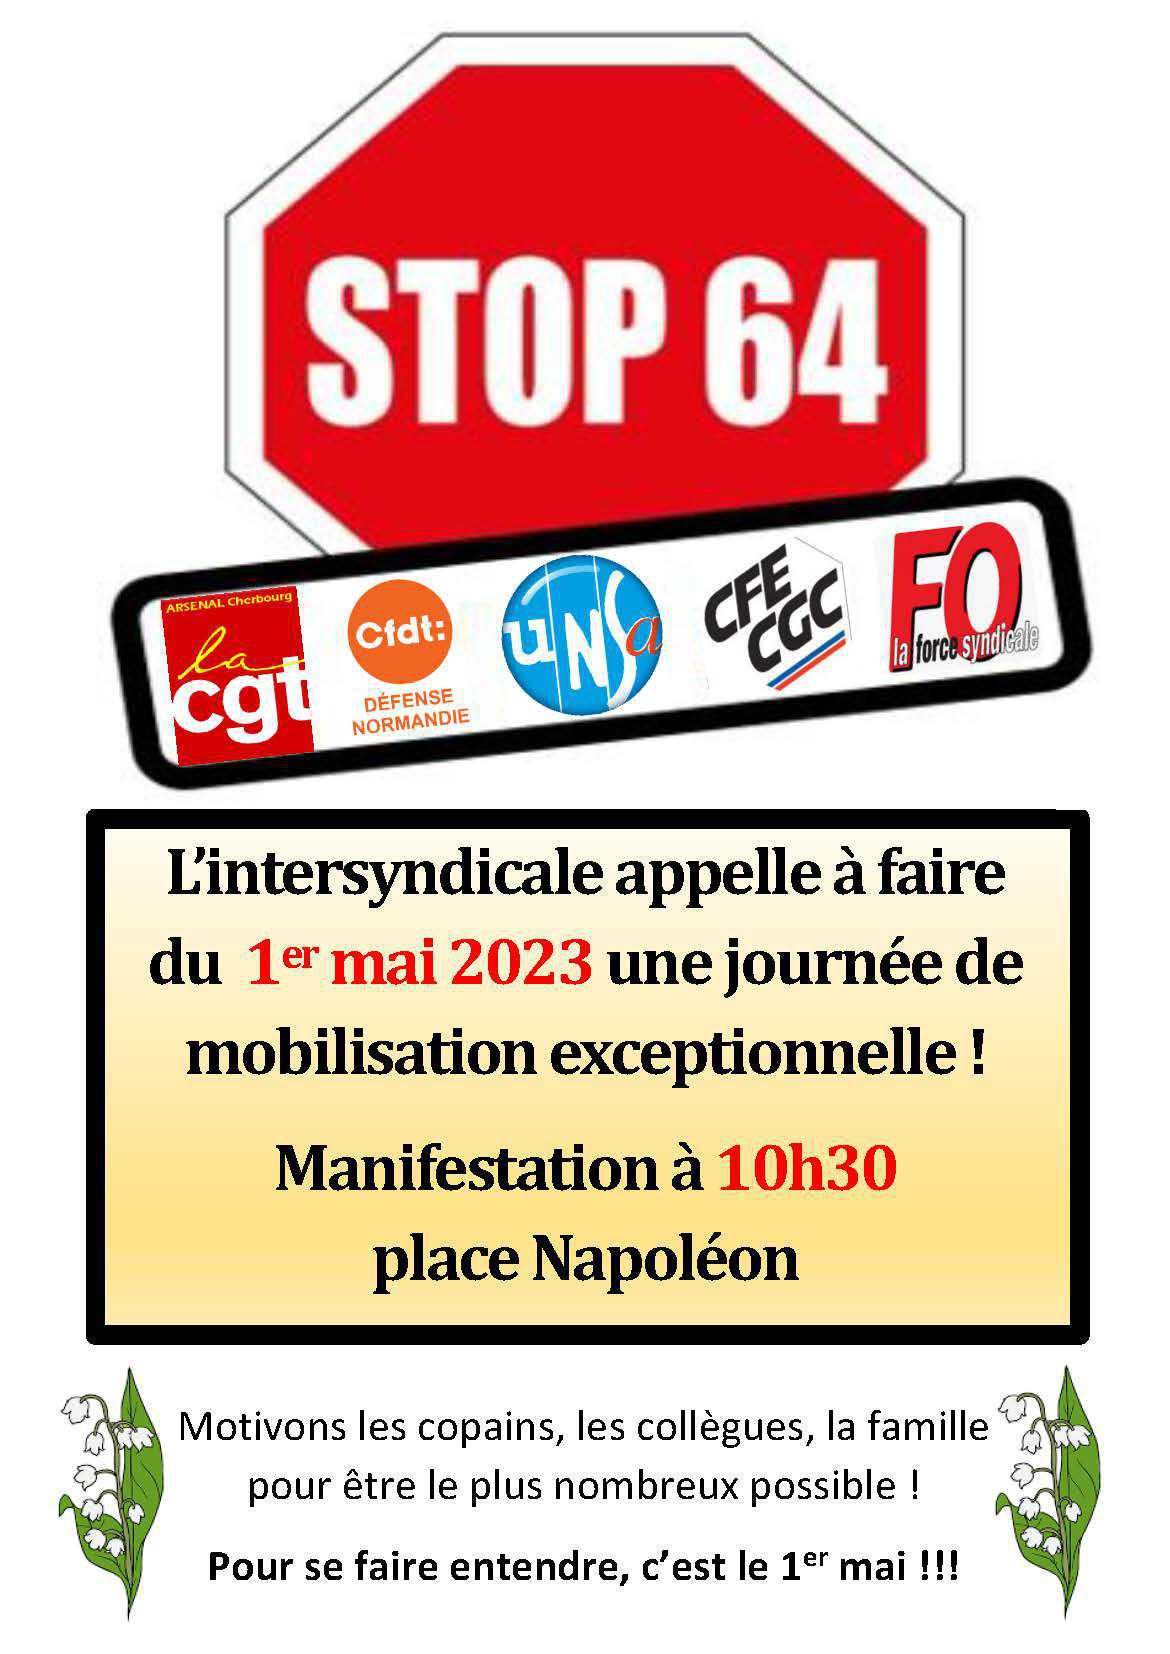 Manifestation le 1er mai à 10h30 place Napoléon